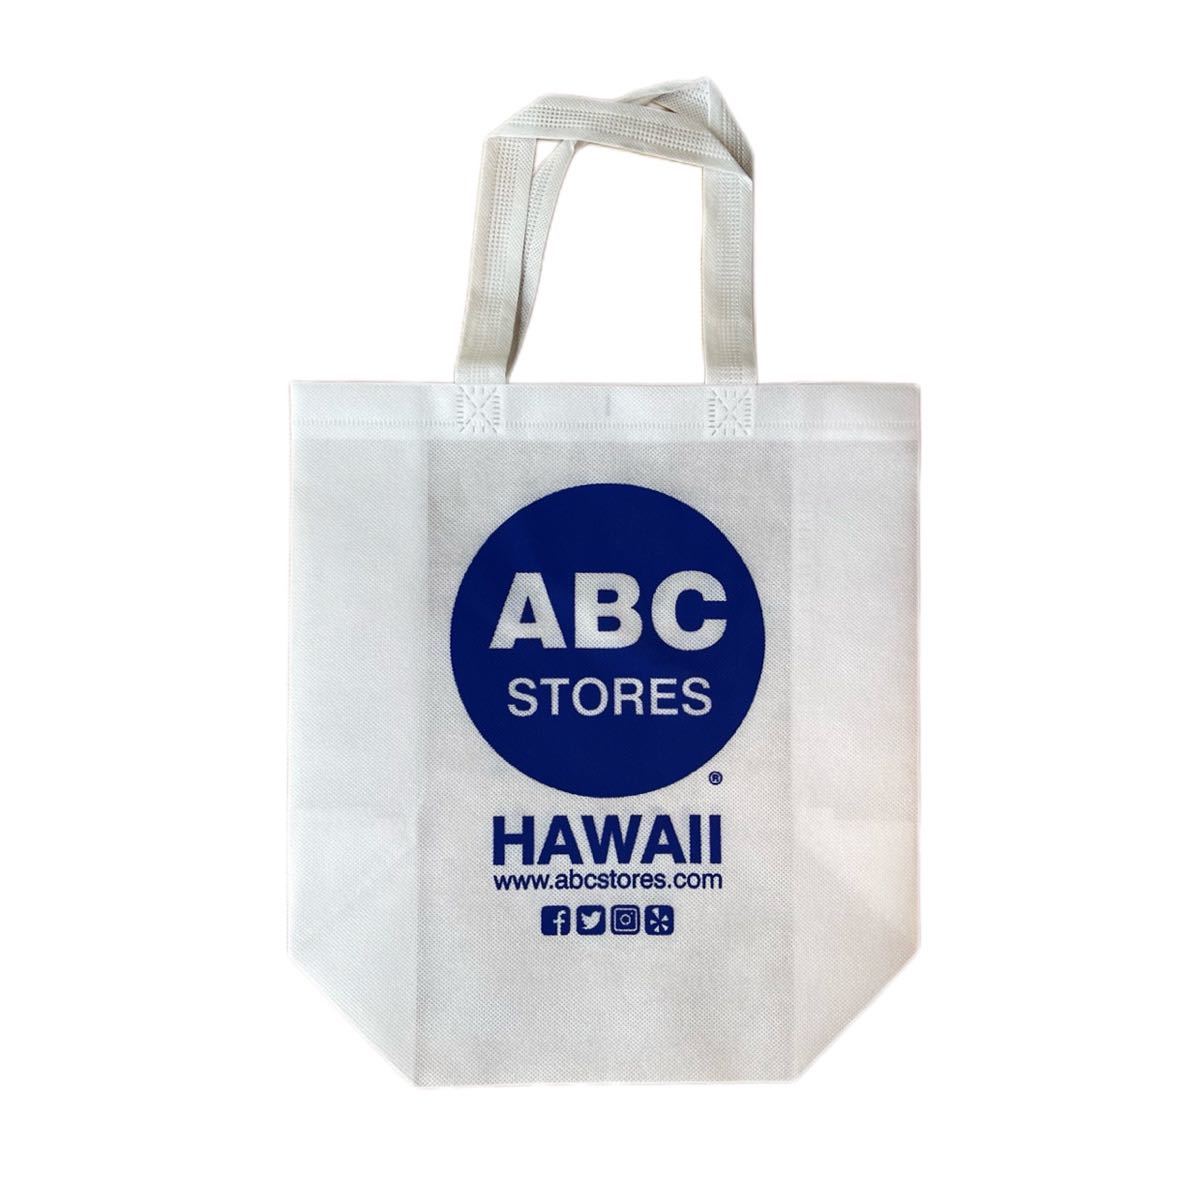 ABC STORE エコバッグ F33 ハワイ エコバック usdm jdm hdm ハワイ雑貨 アメリカ雑貨 アメリカン雑貨 トートバッグ ショッピングバッグの画像1